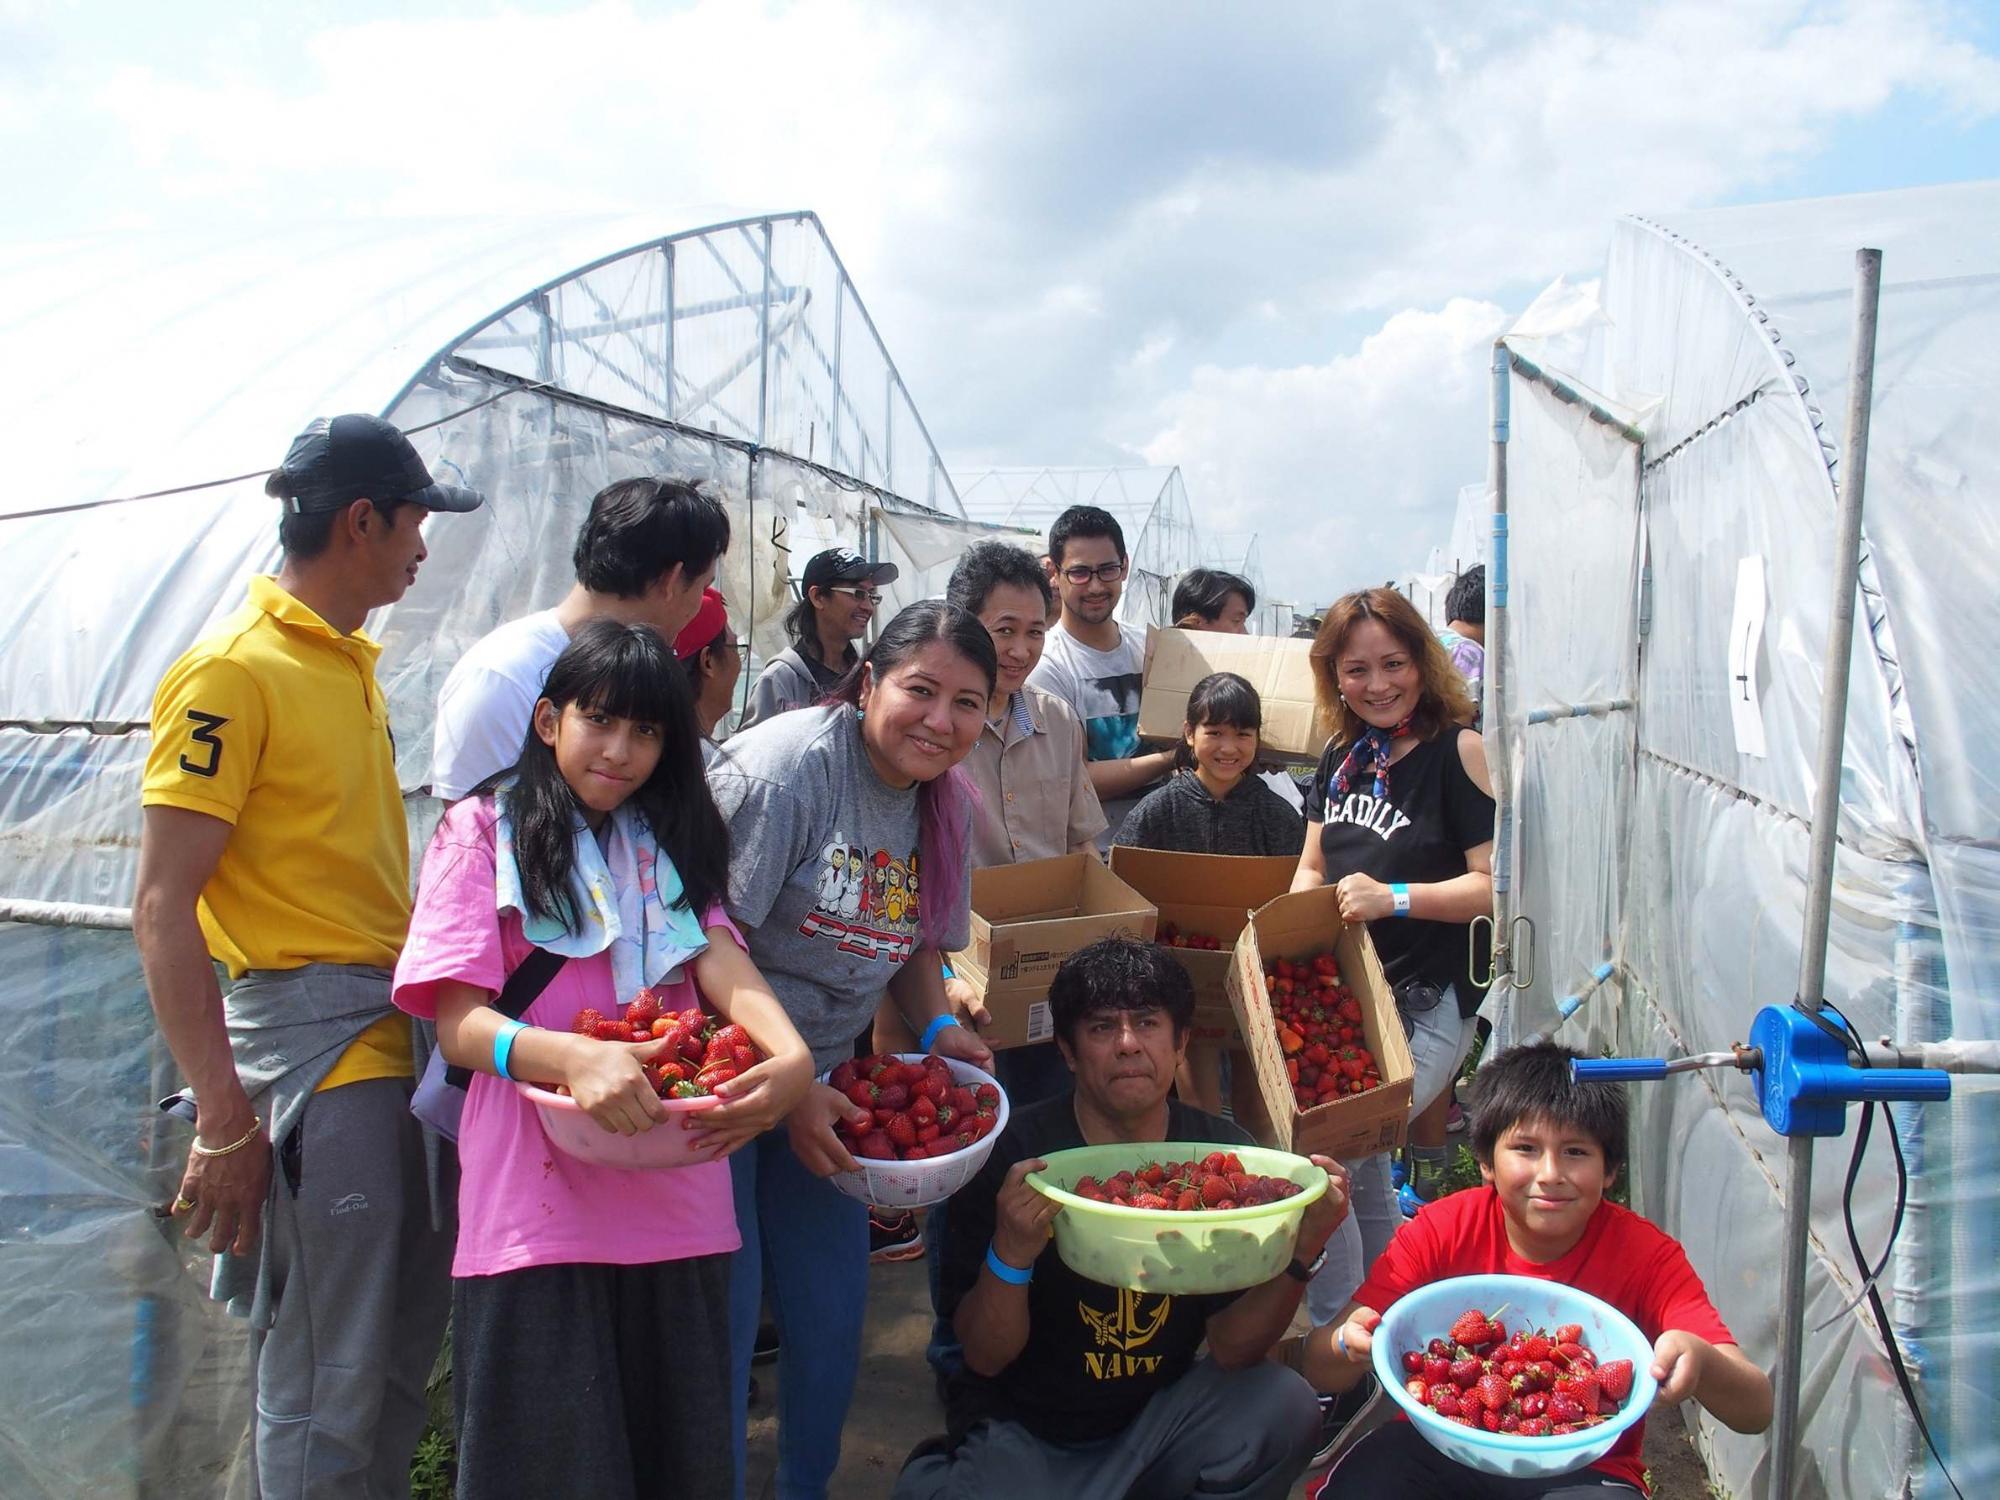 ビニールハウスの前で、籠いっぱいに摘んだ苺を持って笑顔で写る参加者達の写真